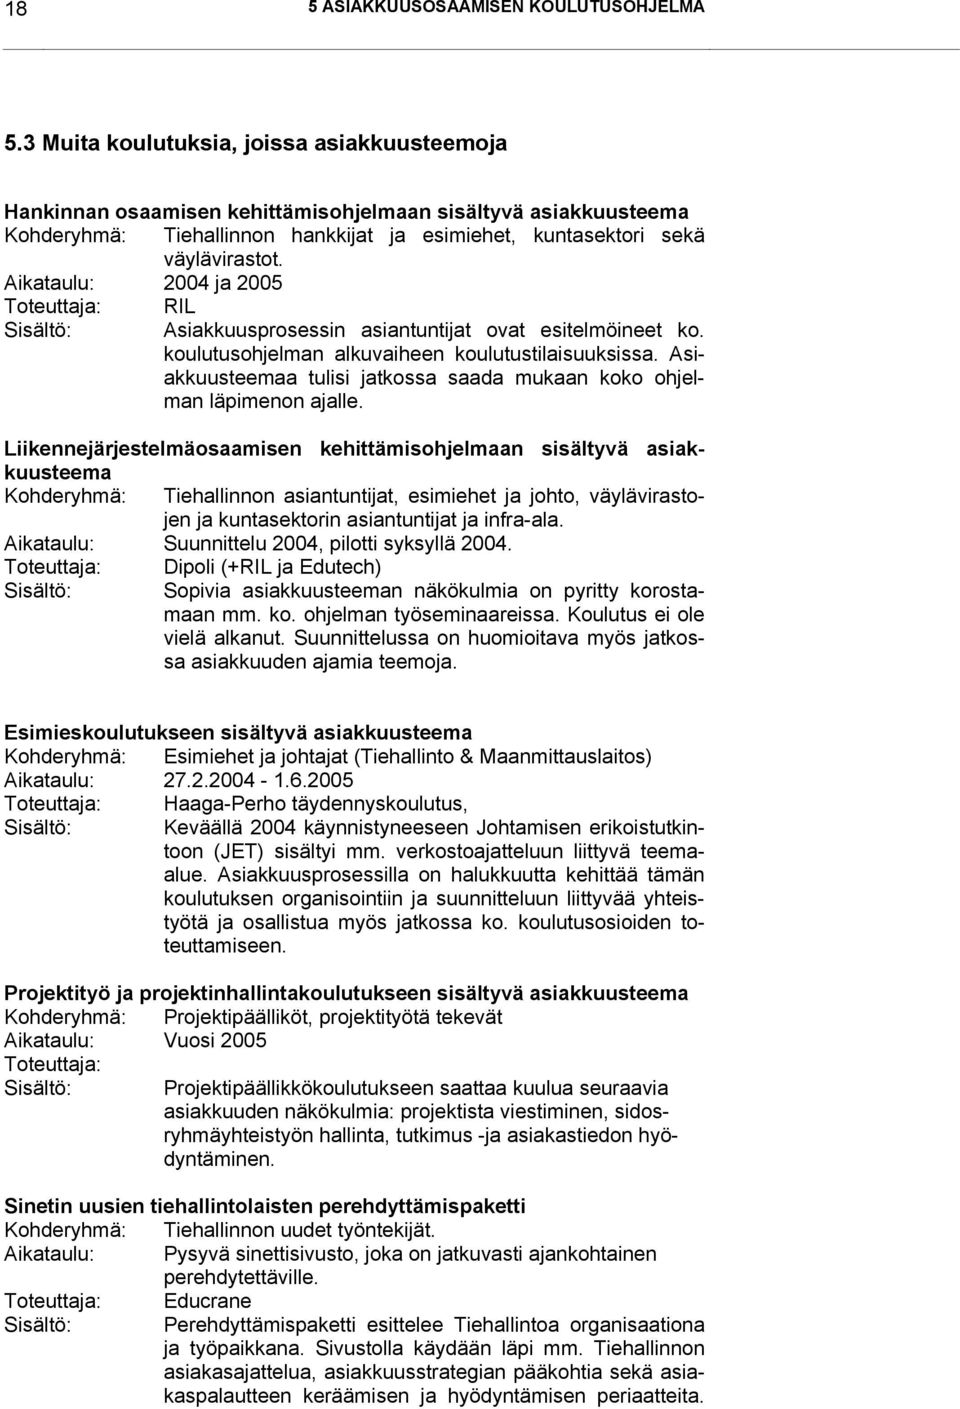 Aikataulu: 2004 ja 2005 Toteuttaja: RIL Sisältö: Asiakkuusprosessin asiantuntijat ovat esitelmöineet ko. koulutusohjelman alkuvaiheen koulutustilaisuuksissa.